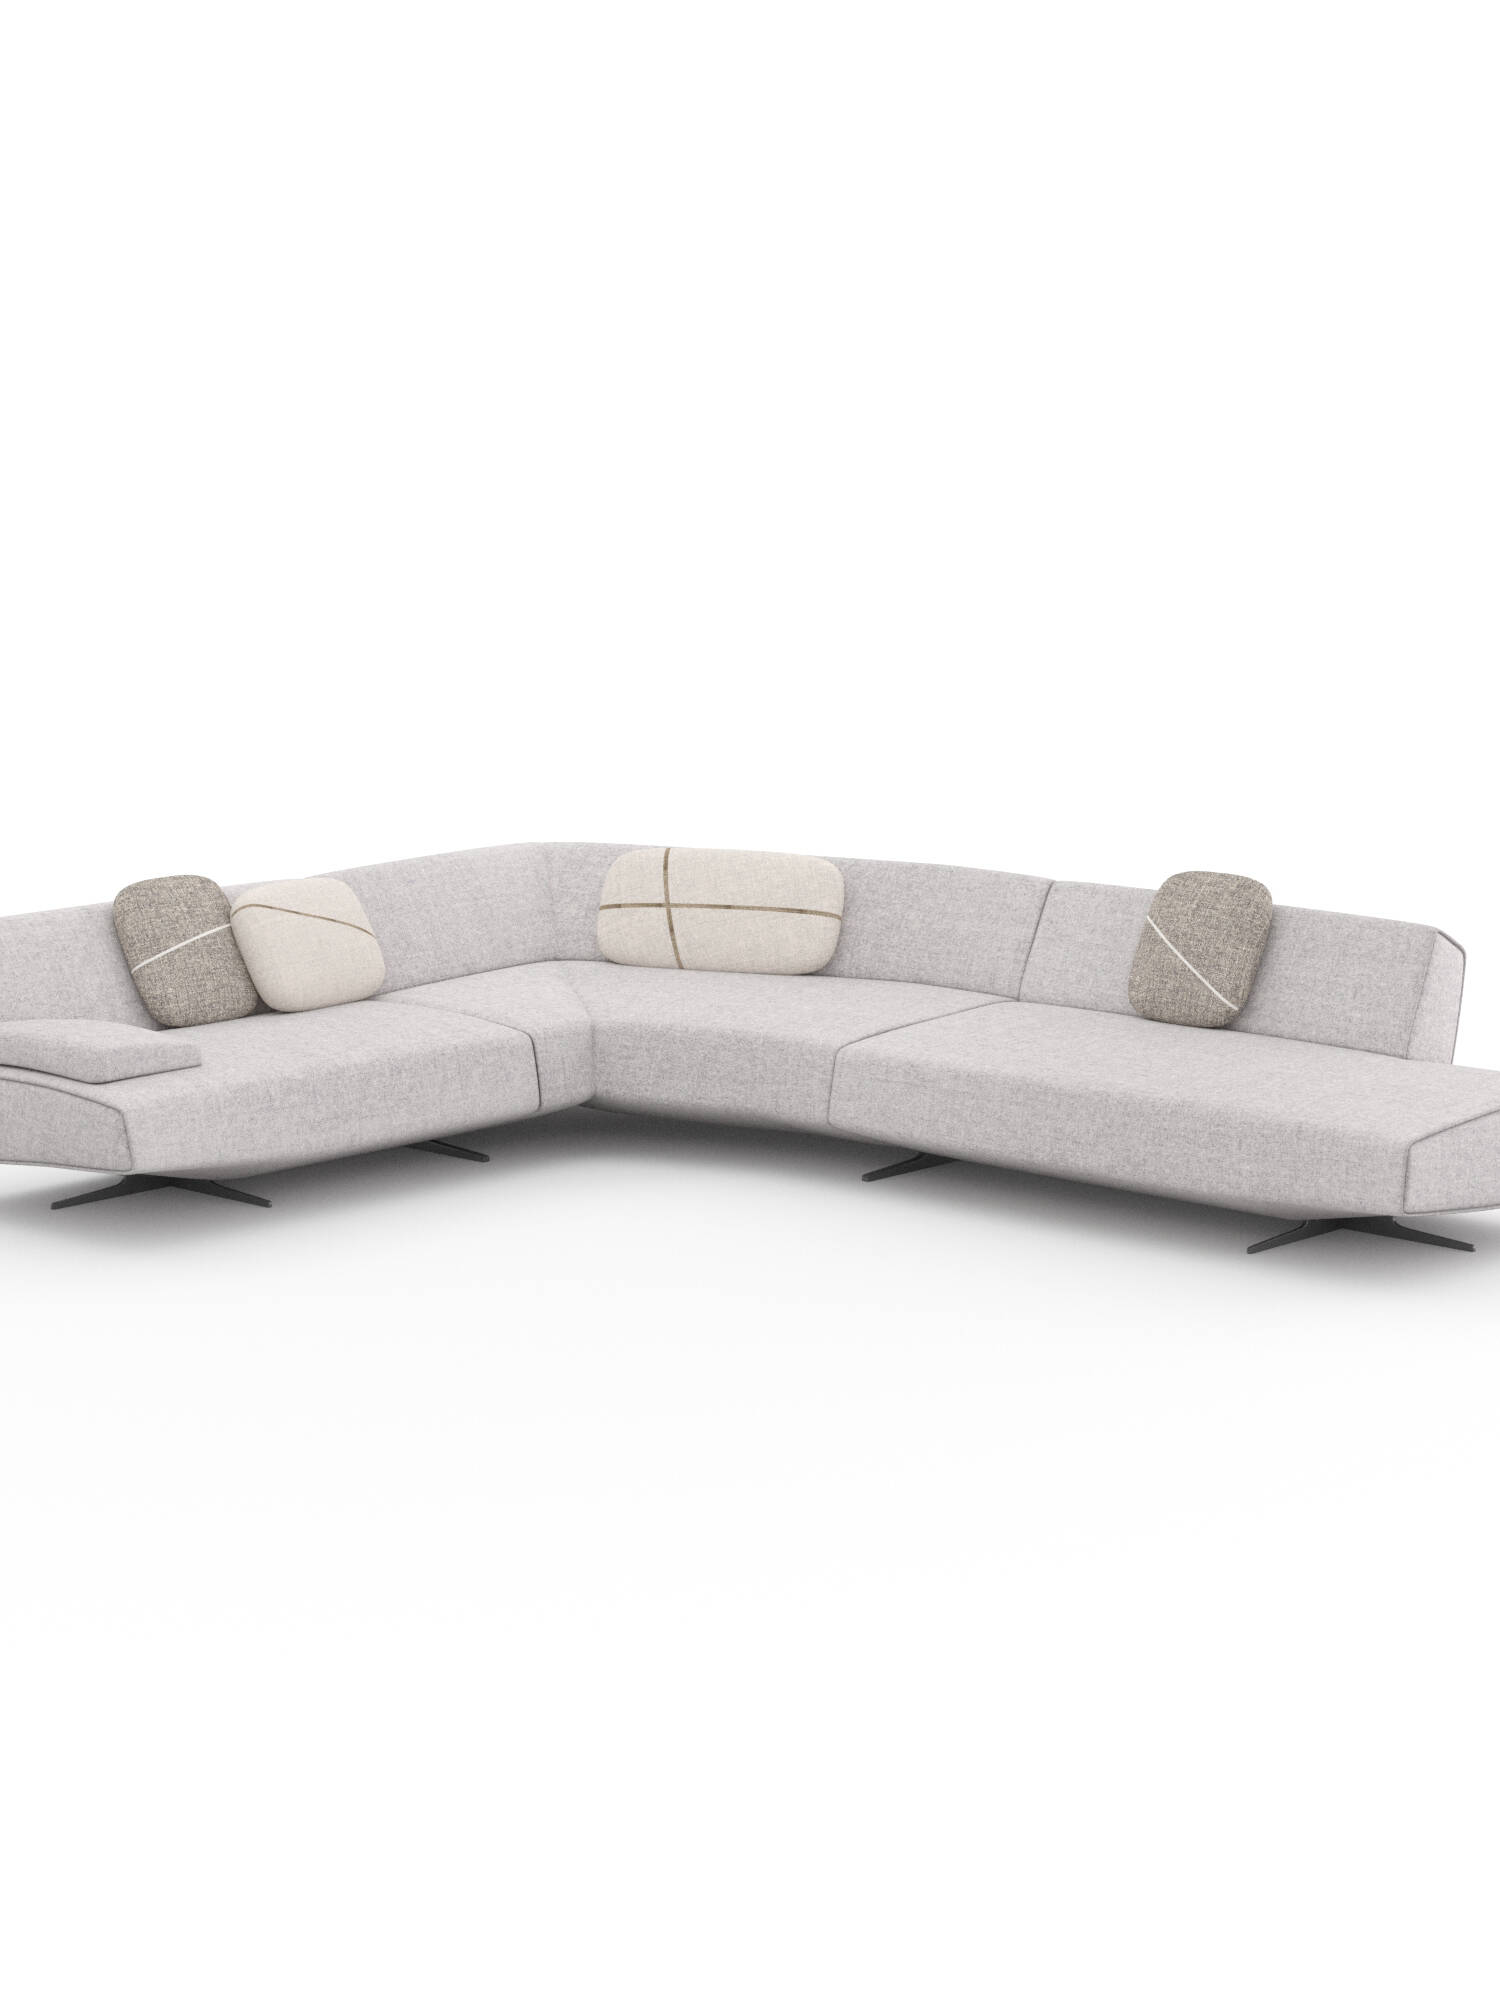 poliform-sydney-sofa